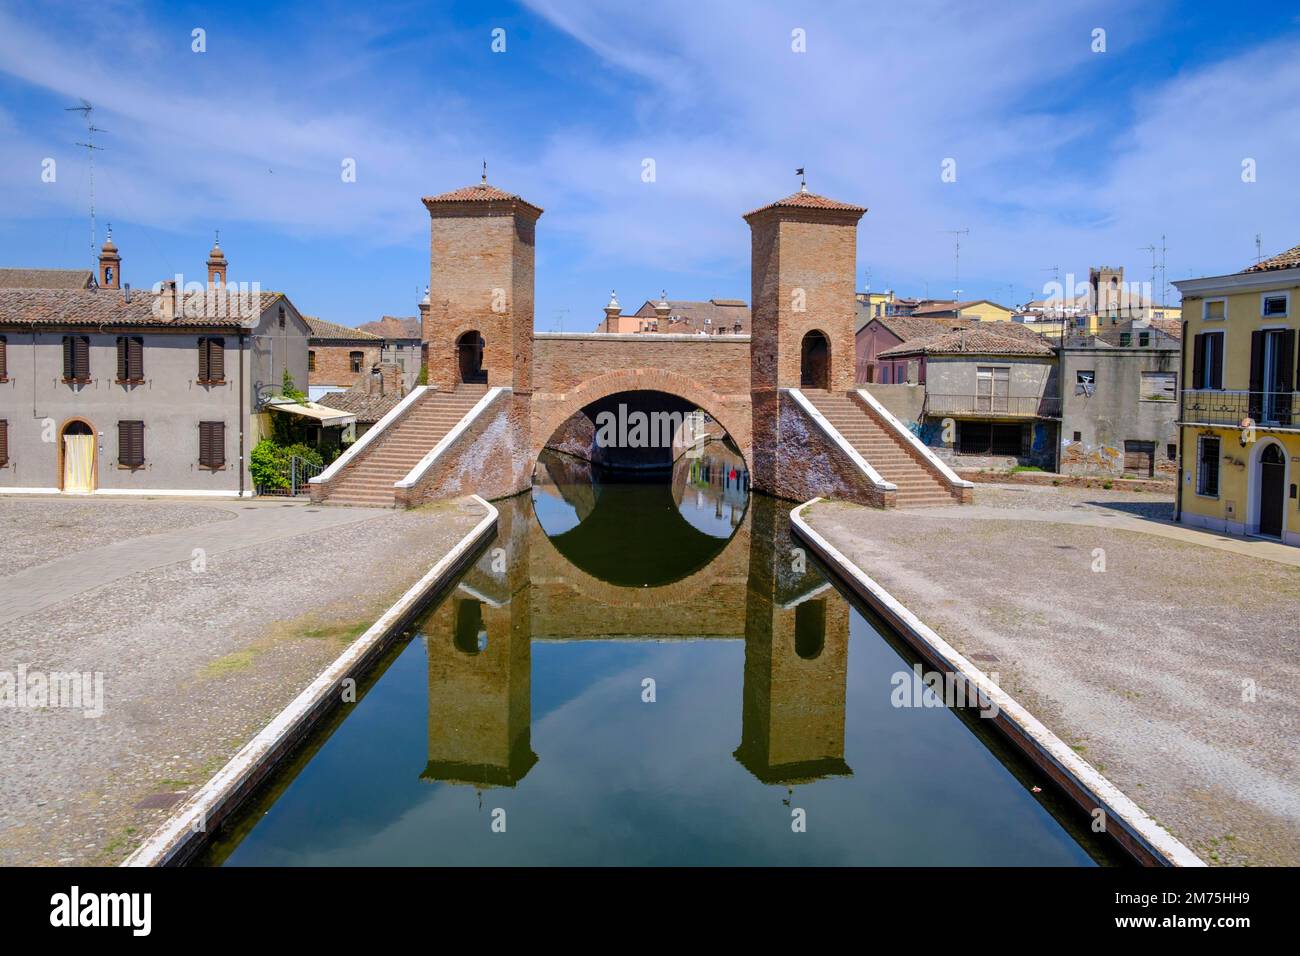 Trepponti Bridge, Comacchio, Emilia-Romagna, Italy Stock Photo